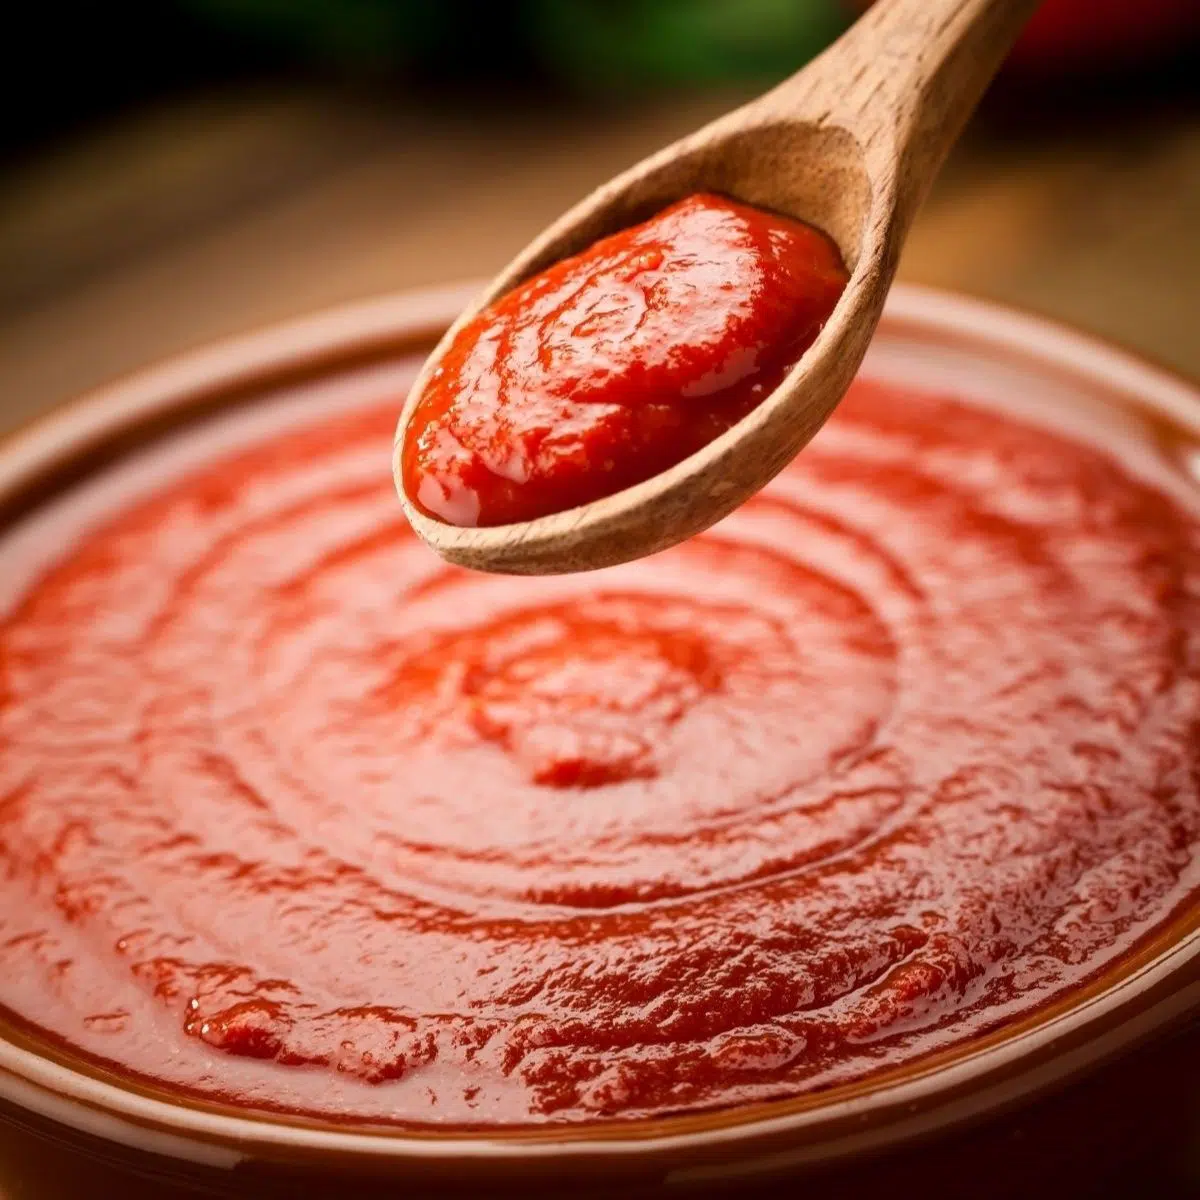 あらゆる料理レシピで使用するのに最適なトマトソースの代替品。